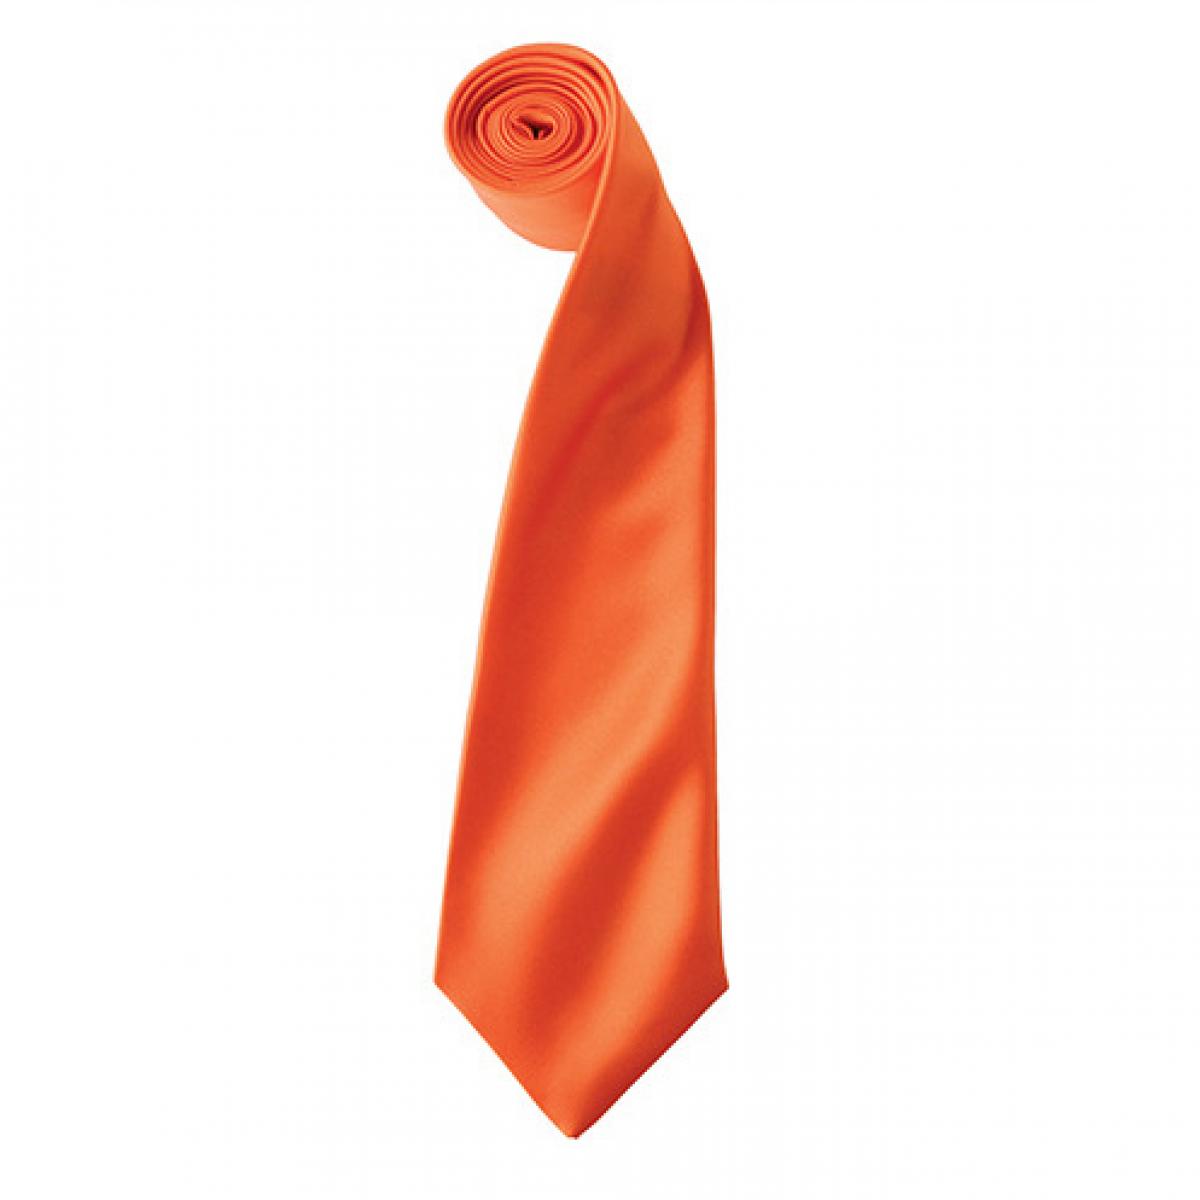 Hersteller: Premier Workwear Herstellernummer: PR750 Artikelbezeichnung: Satin Tie ´Colours´ / 144 x 8,5 cm Farbe: Orange (ca. Pantone 1655)